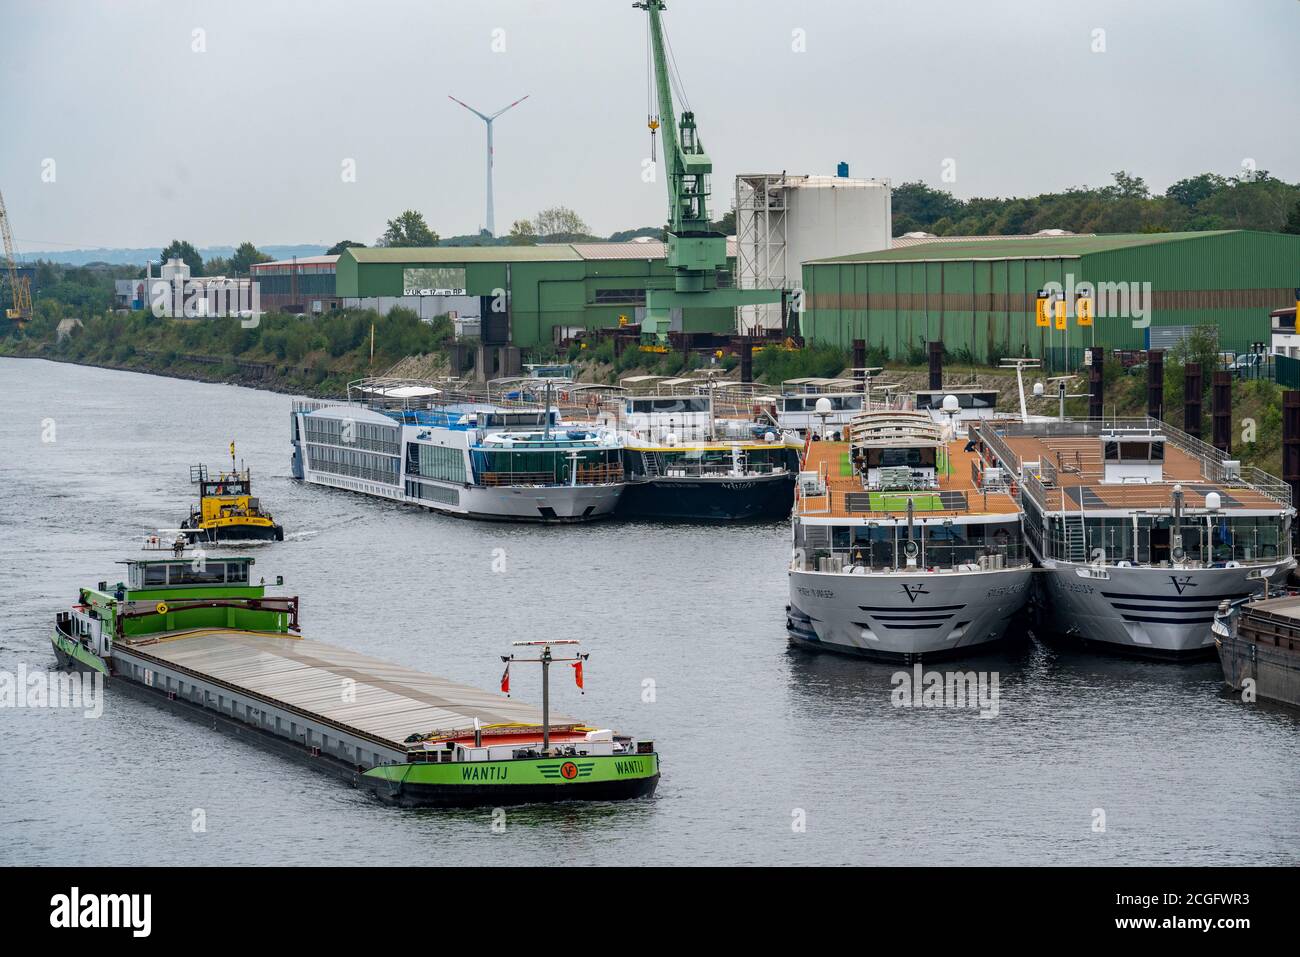 Flusskreuzfahrtschiffe verschiedener Reedereien sind im Duisburger Ruhrort-Hafen verankert, sie werden aufgrund sinkender Passagierzahlen während der Fahrt nicht benötigt Stockfoto